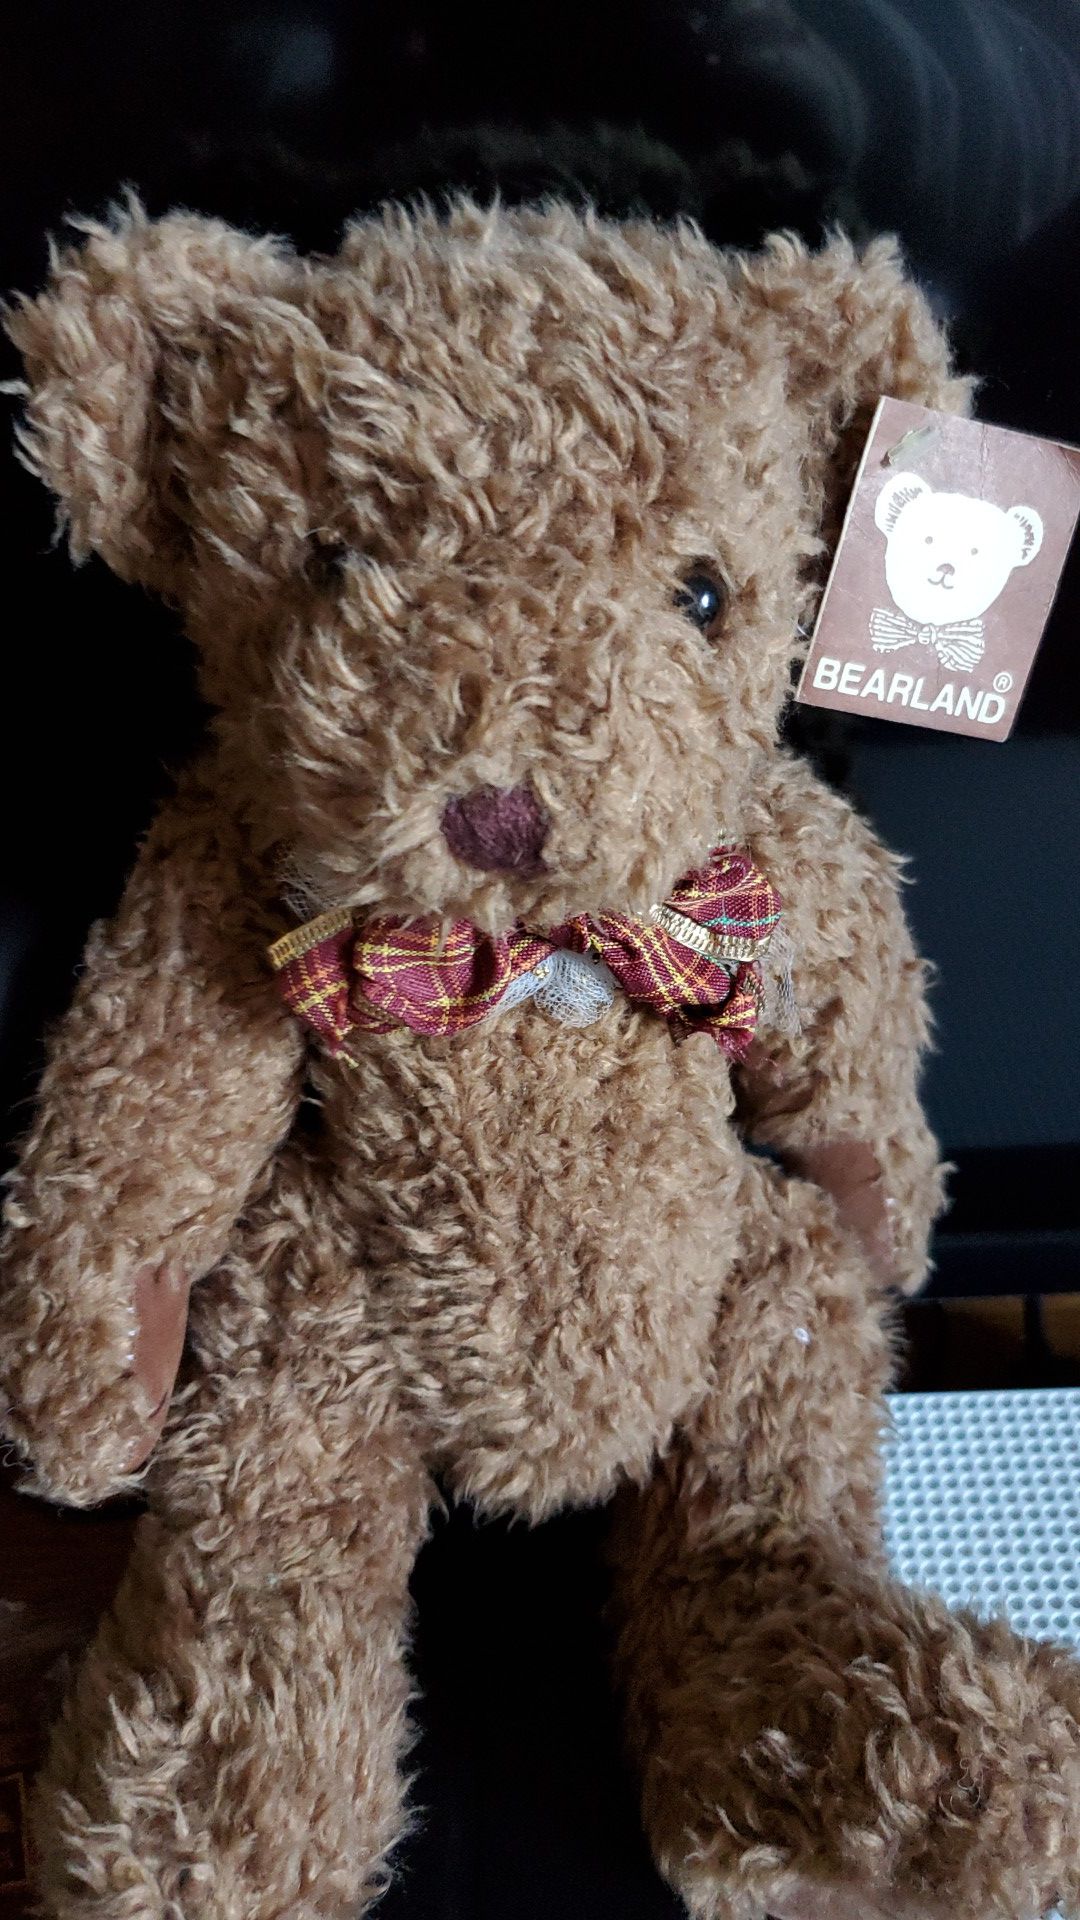 Bearland teddy bear